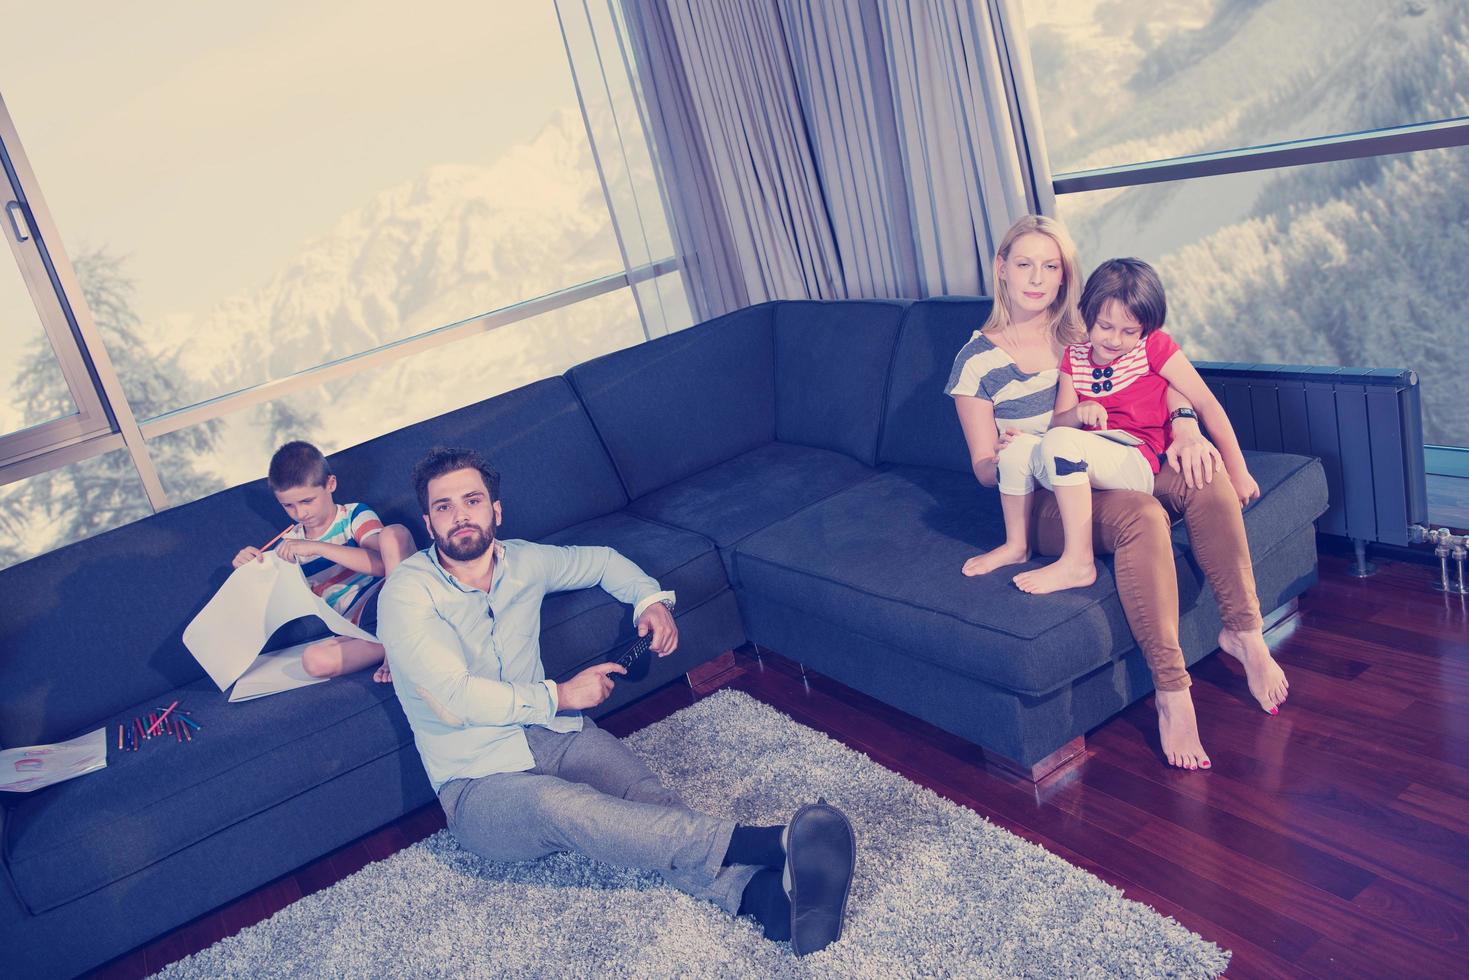 gelukkig jong familie spelen samen Aan sofa foto